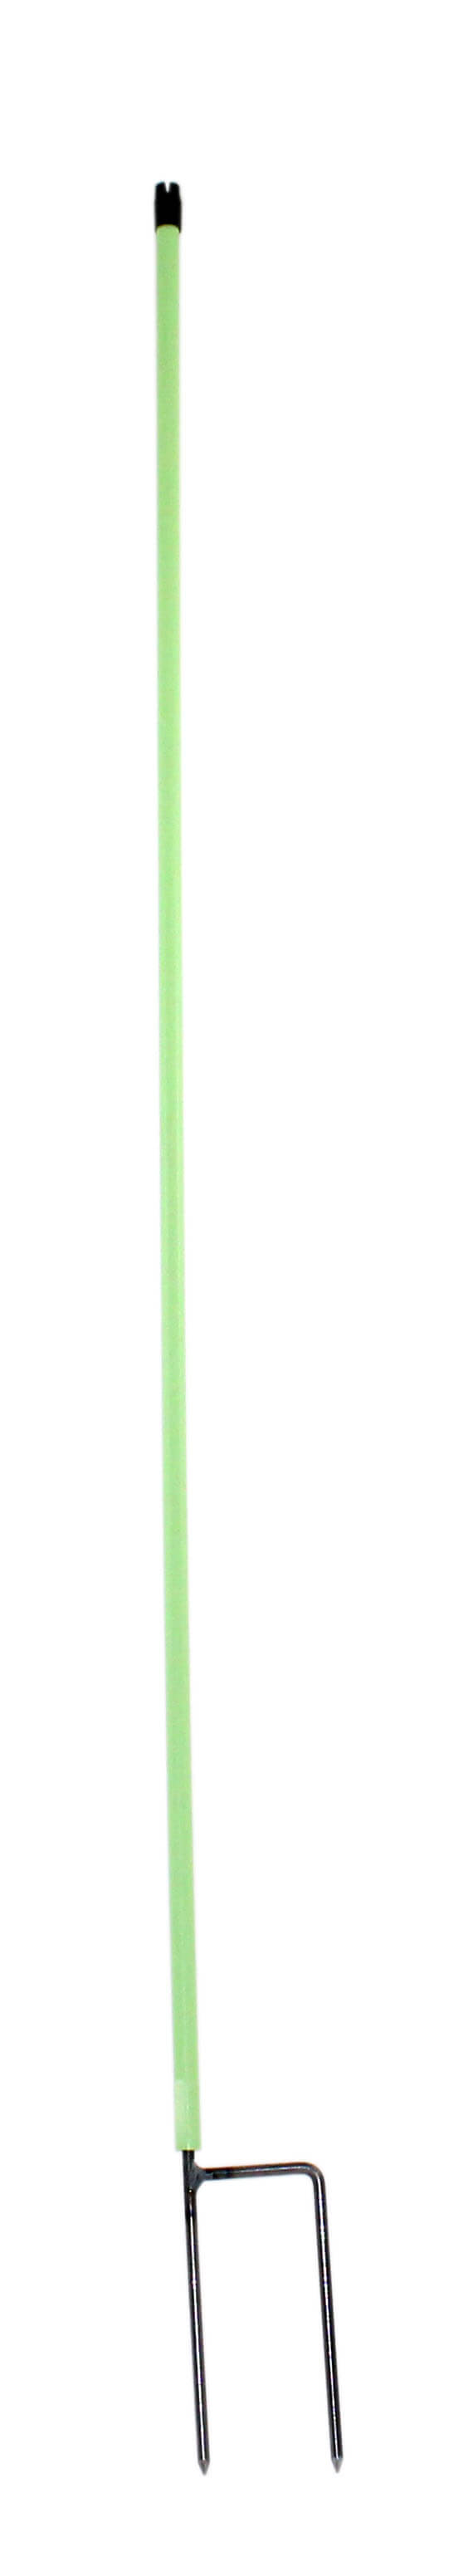 Geflügelnetze (112cm)